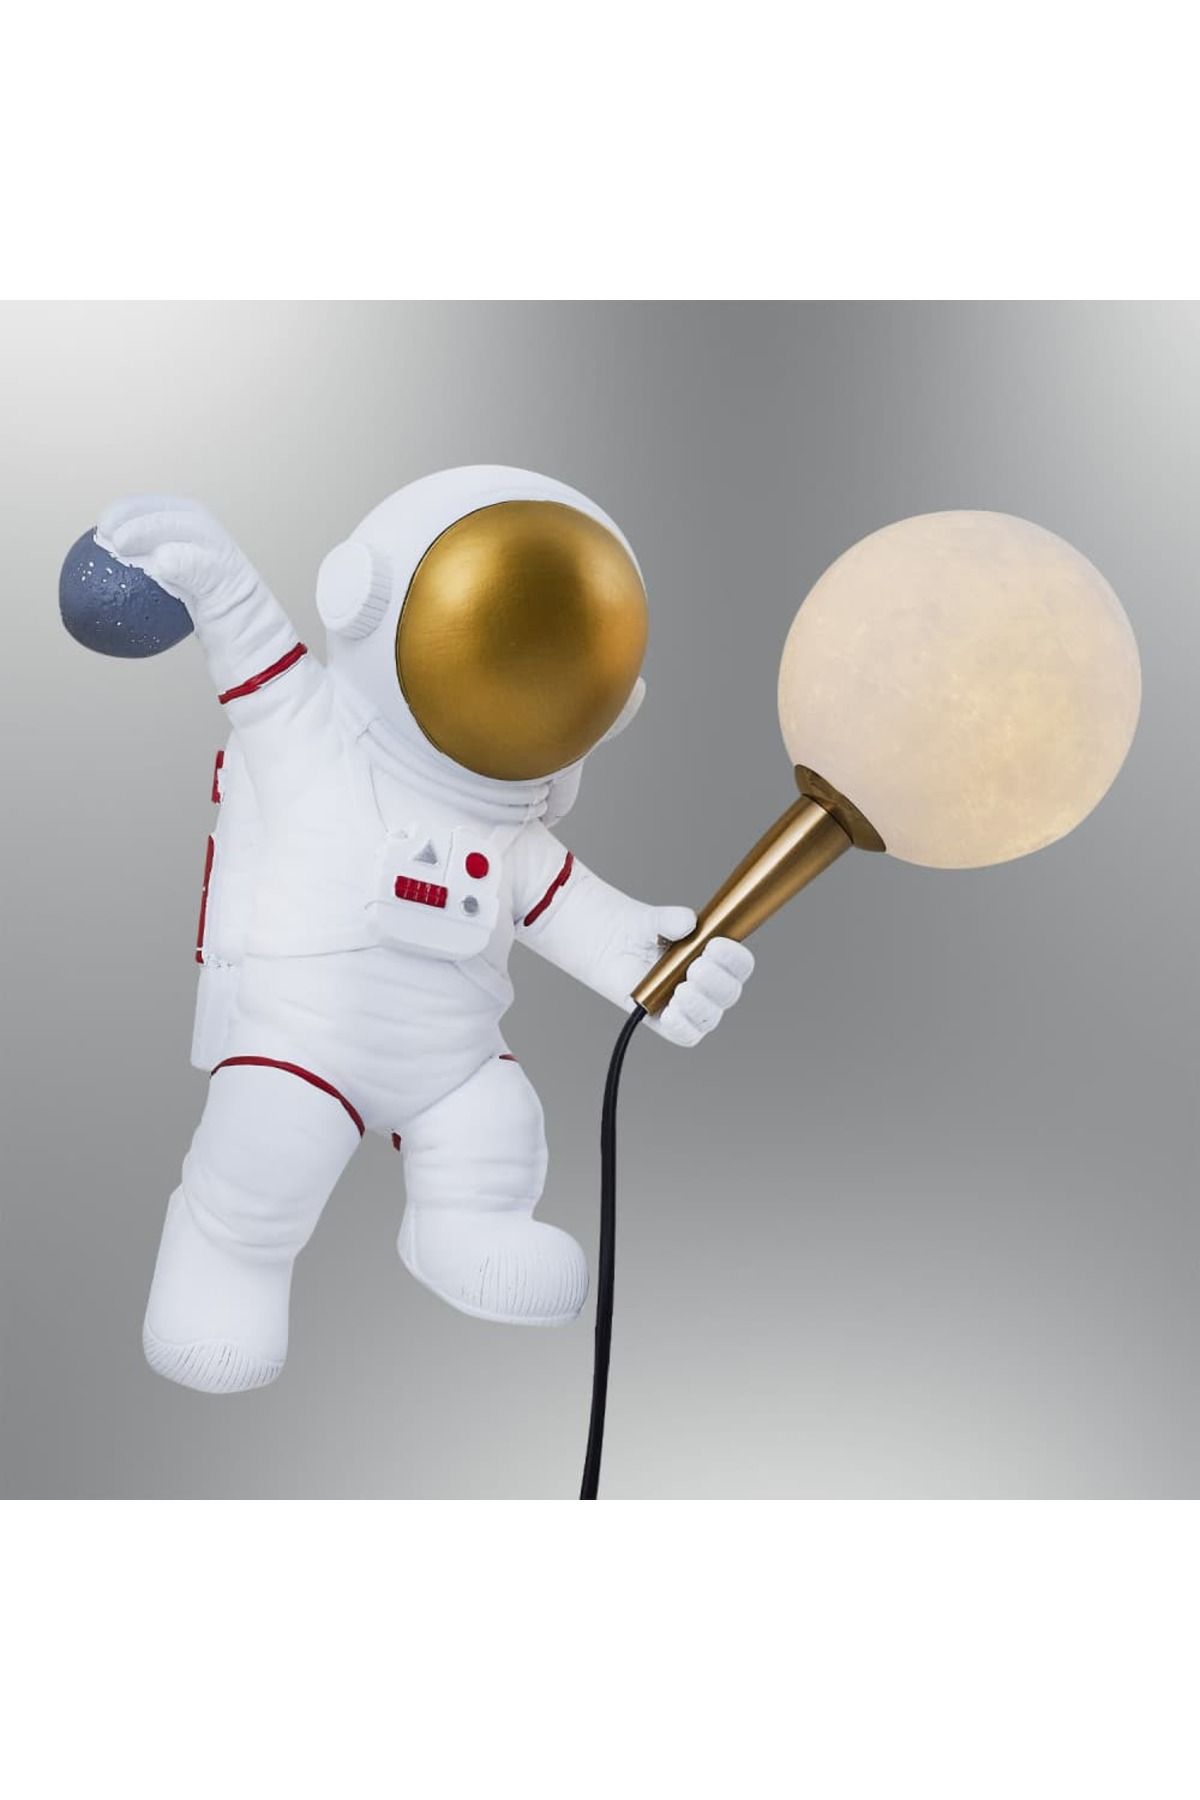 Özcan Aydınlatma 2050-3 Astronot Aplik